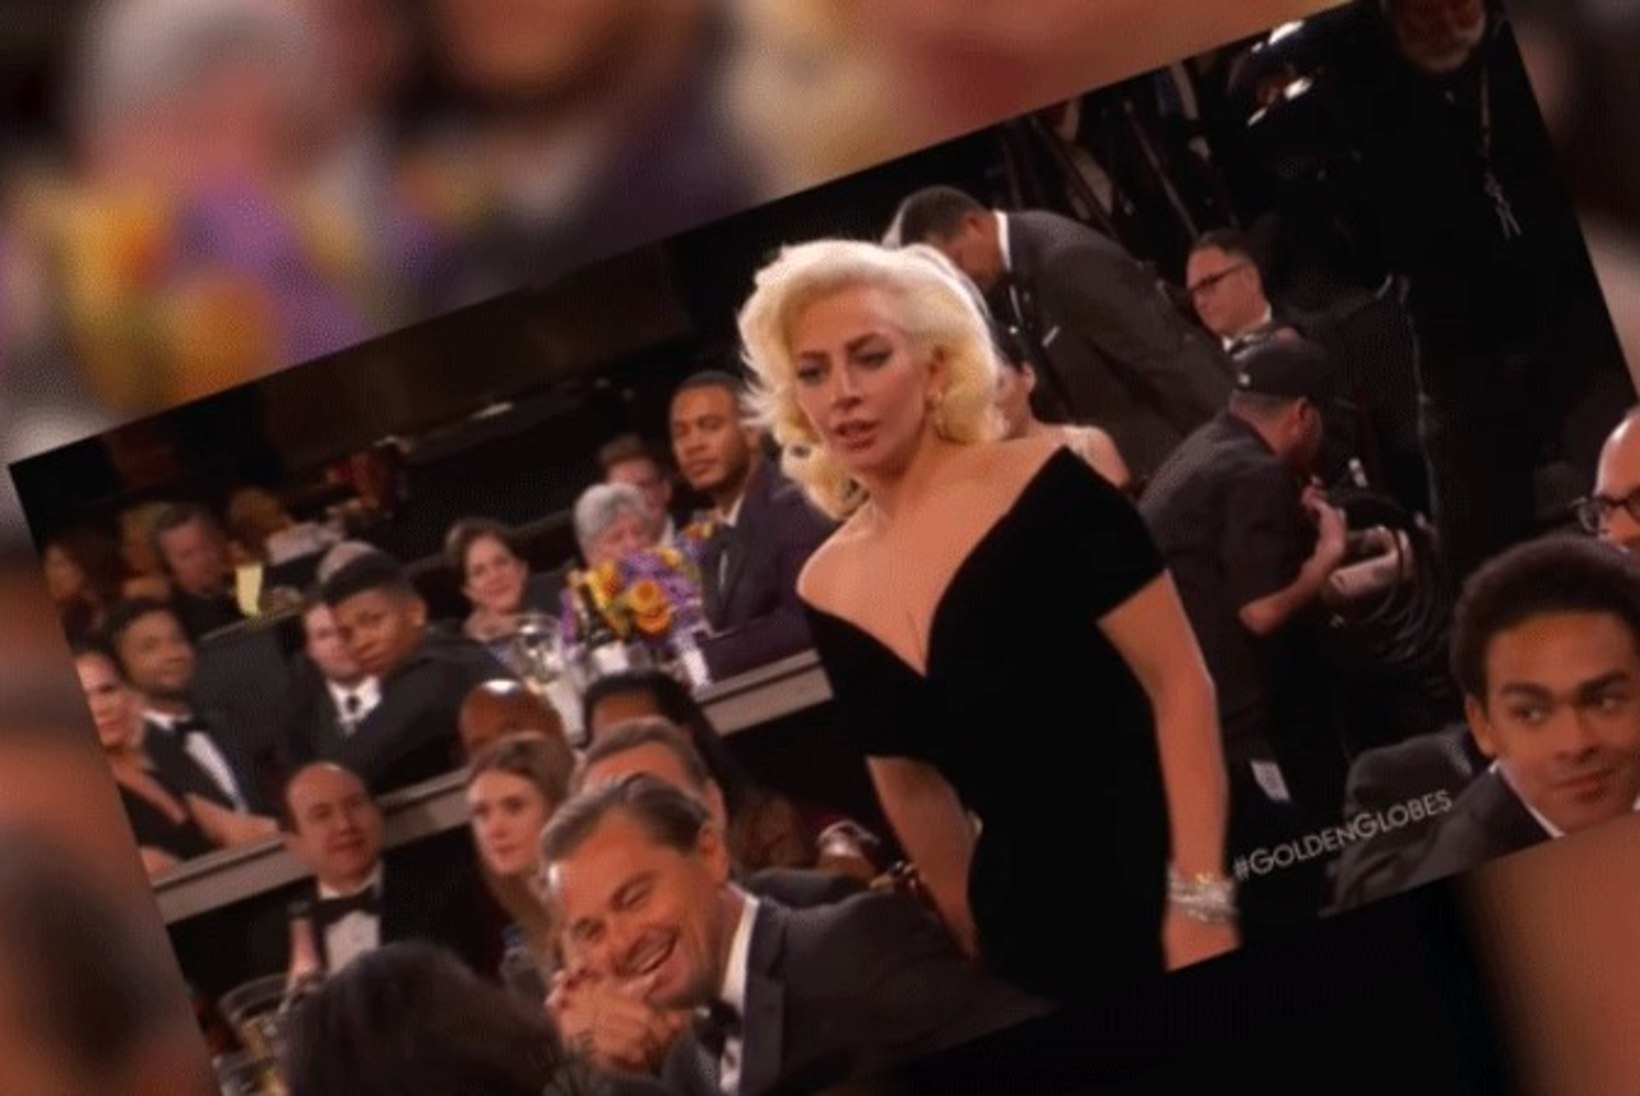 VIDEO | Vaata, millise põlgliku ja üleoleva pilgu heidab DiCaprio Kuldgloobuse võitnud Lady Gagale